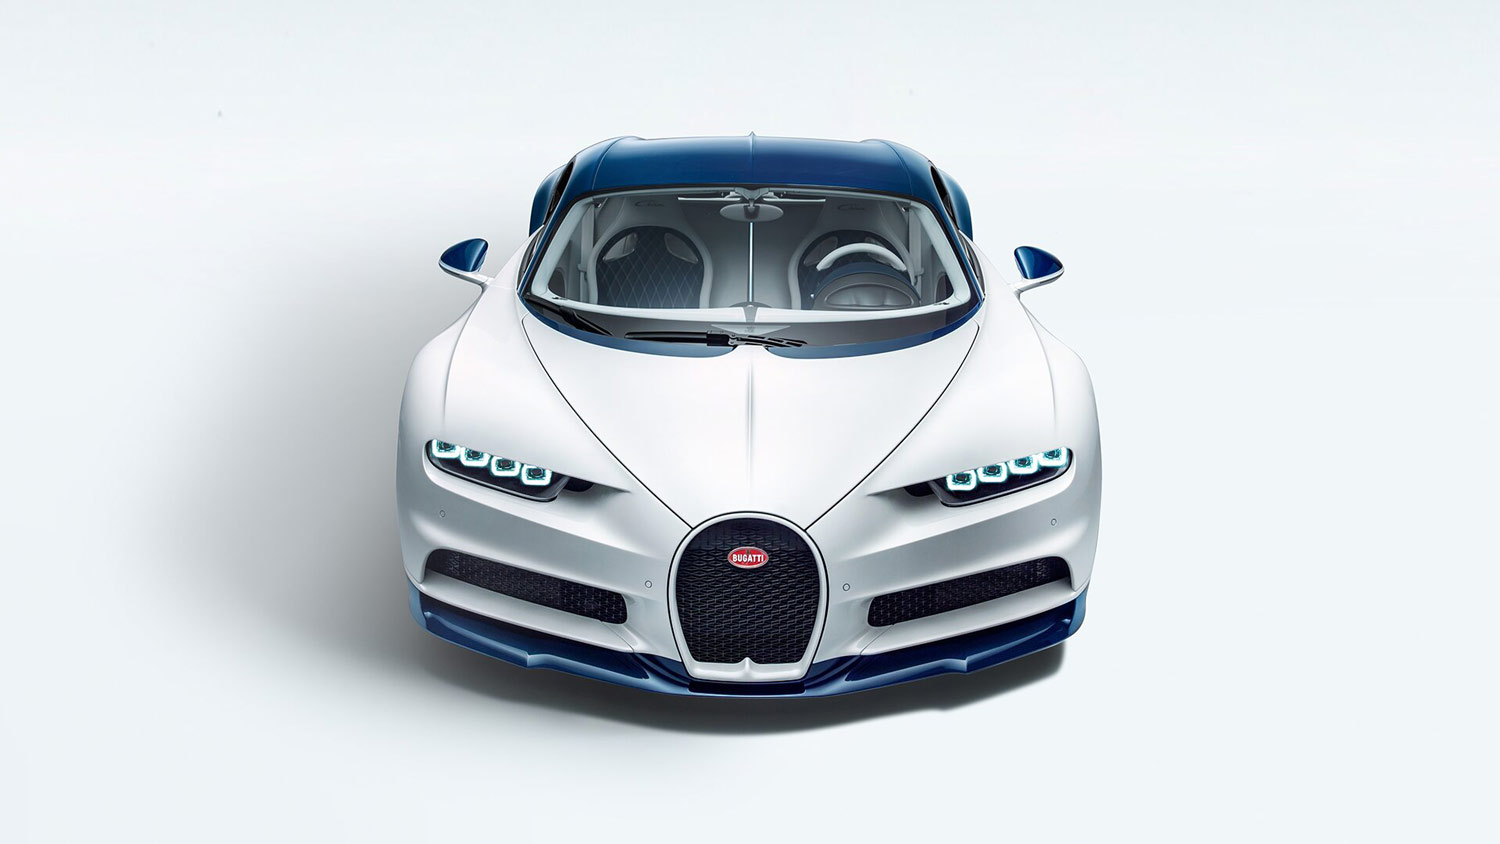 La Bugatti Chiron è la vettura sportiva più veloce esclusiva e potente che la casa francese abbia mai prodotto in tutta la sa storia.